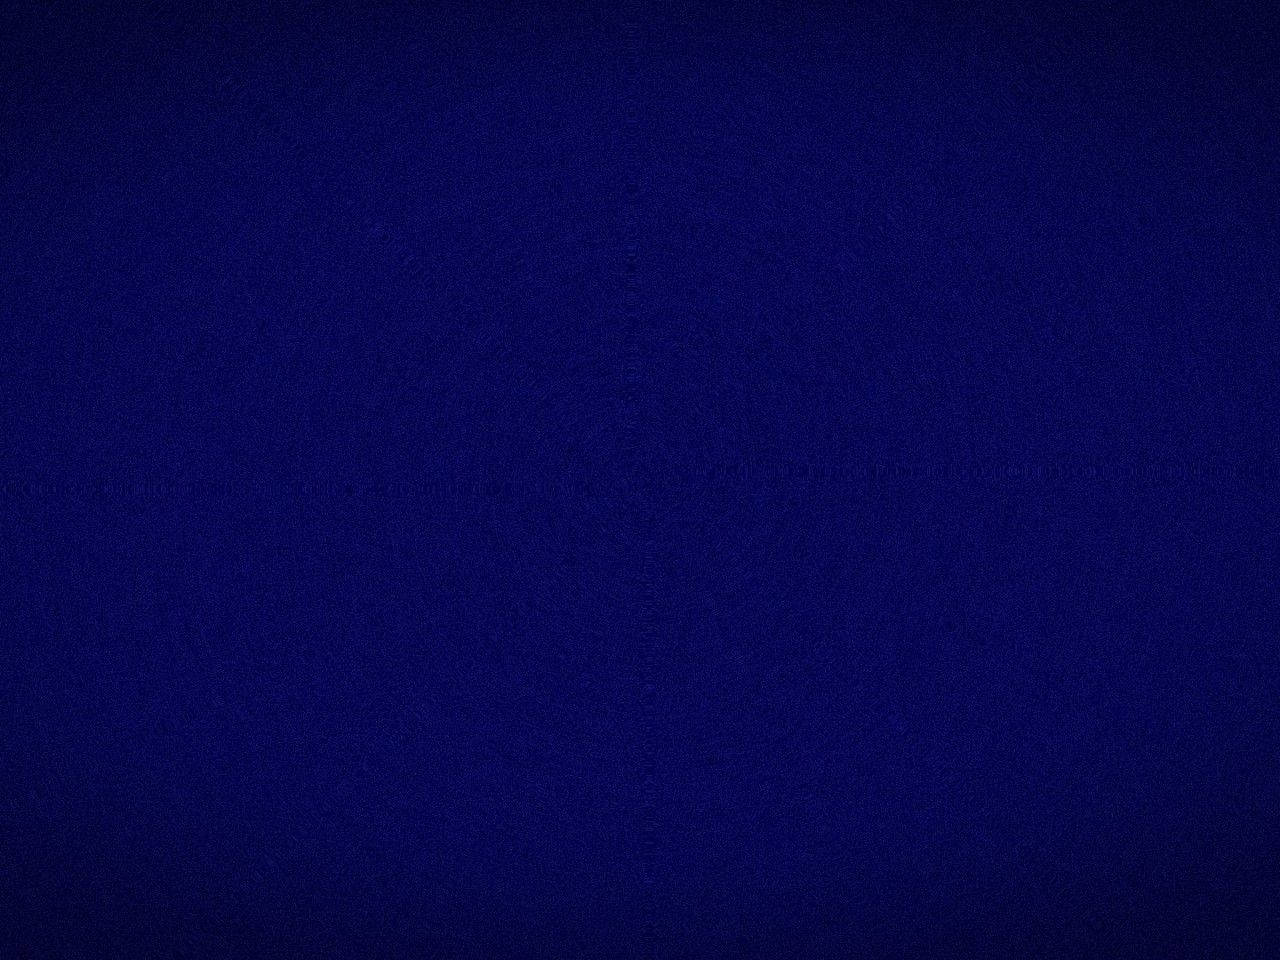 Plain Navy Blue With Light Vignette Wallpaper